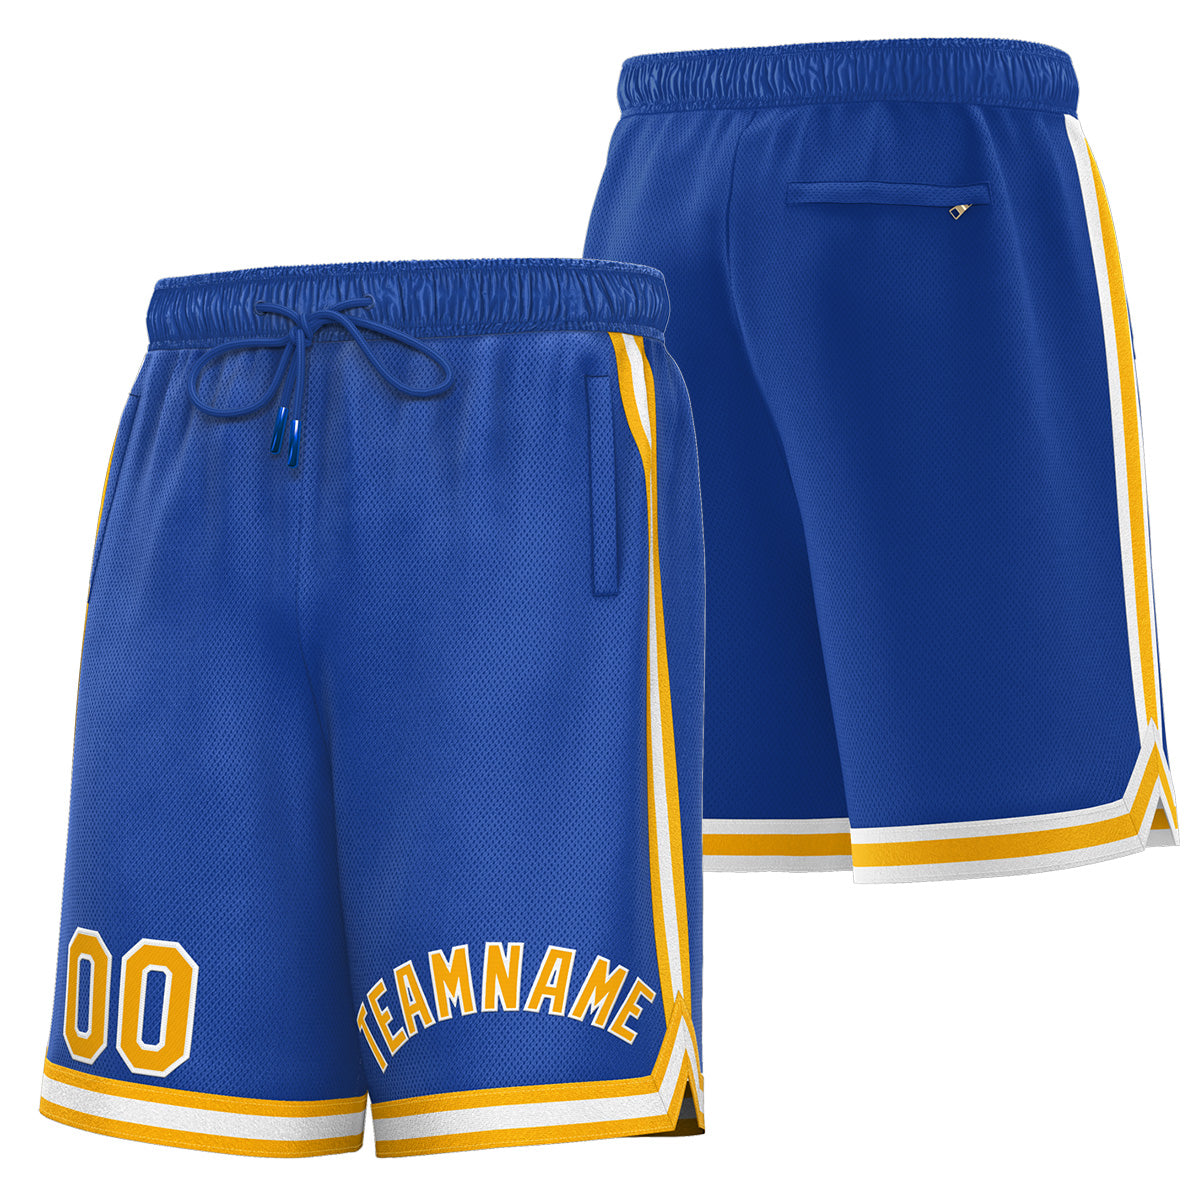 kxk custom royal basketball shorts